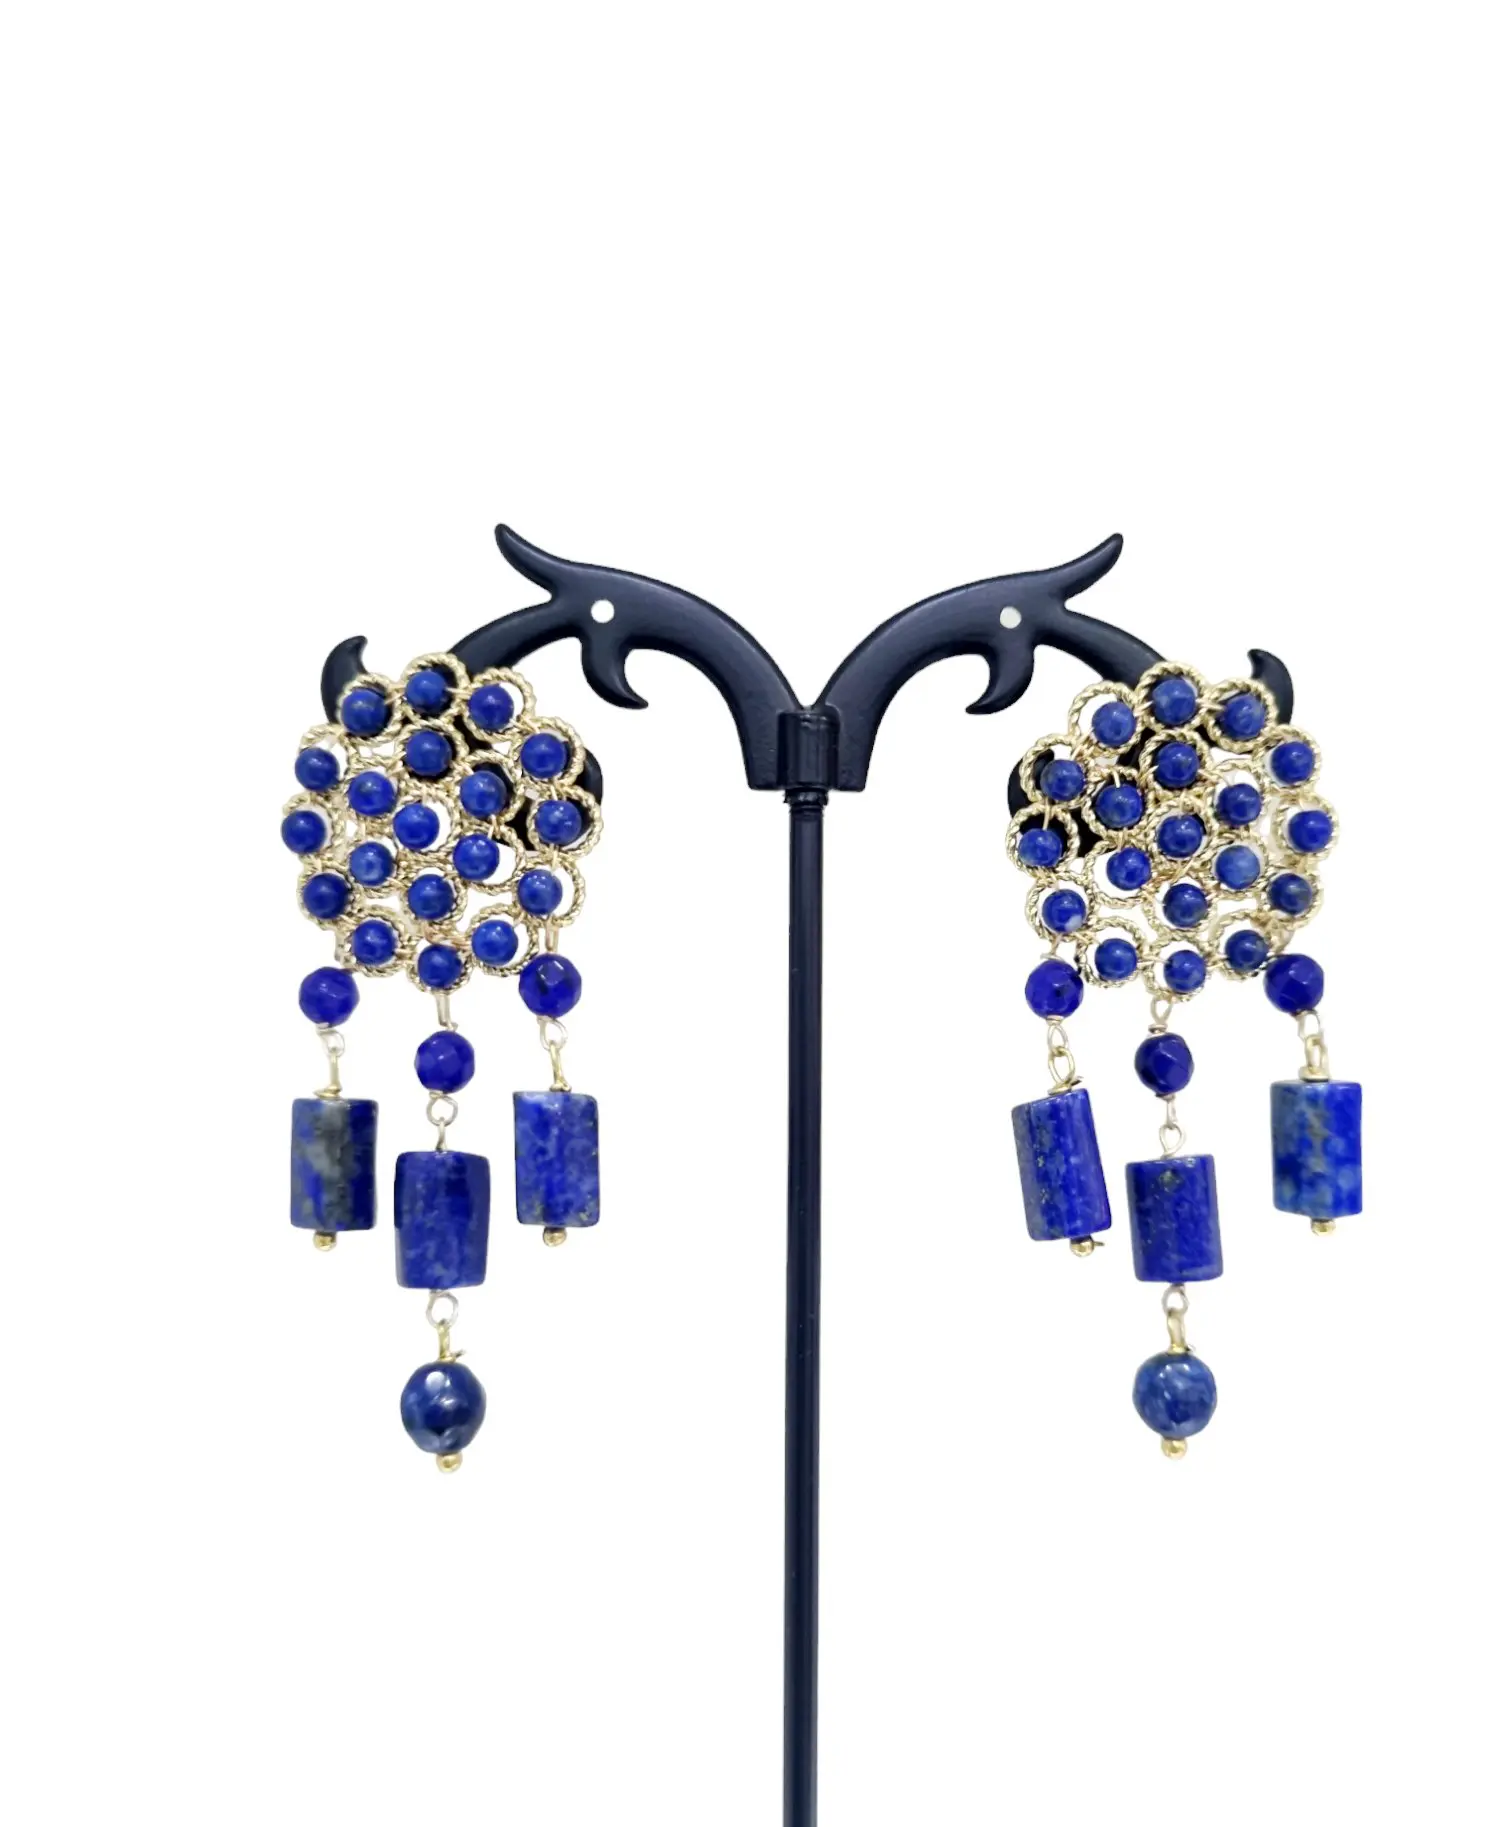 Boucles d'oreilles lapis lazuli et agate bleue – Longueur 5cm – Poids 6g